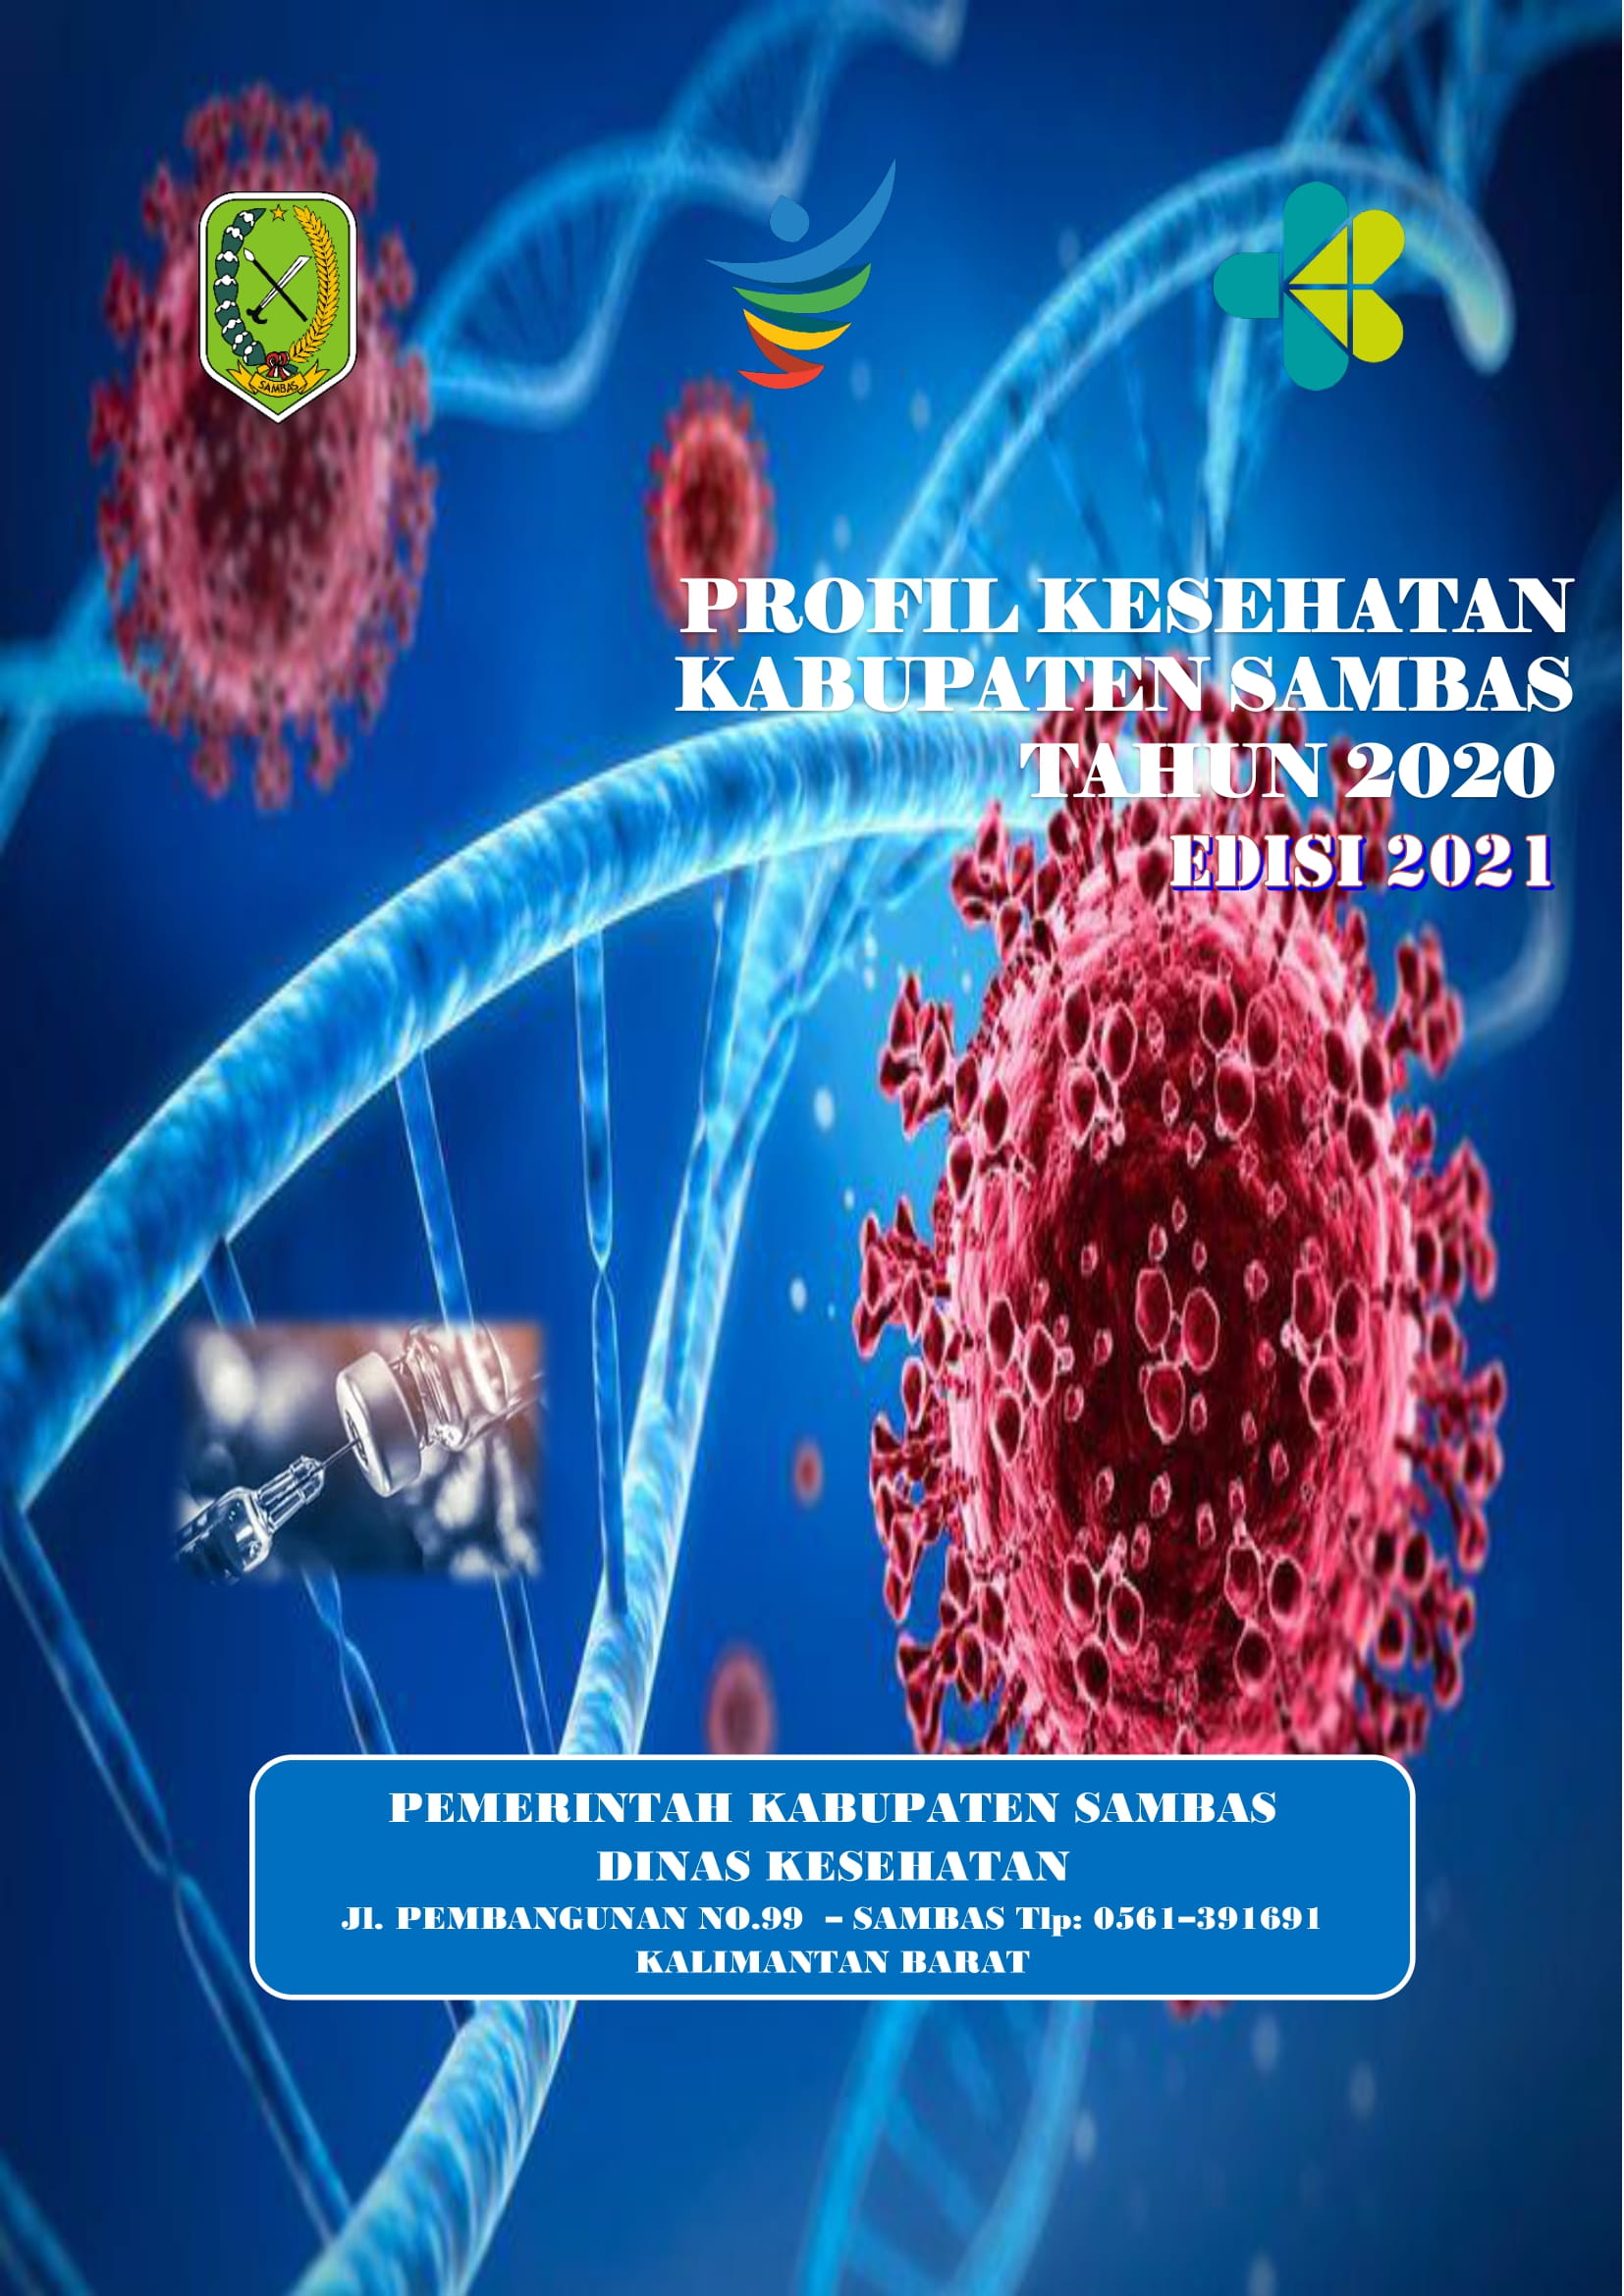 PROFIL-KESEHATAN-KABUPATEN-SAMBAS-2020-edisi-2021-001